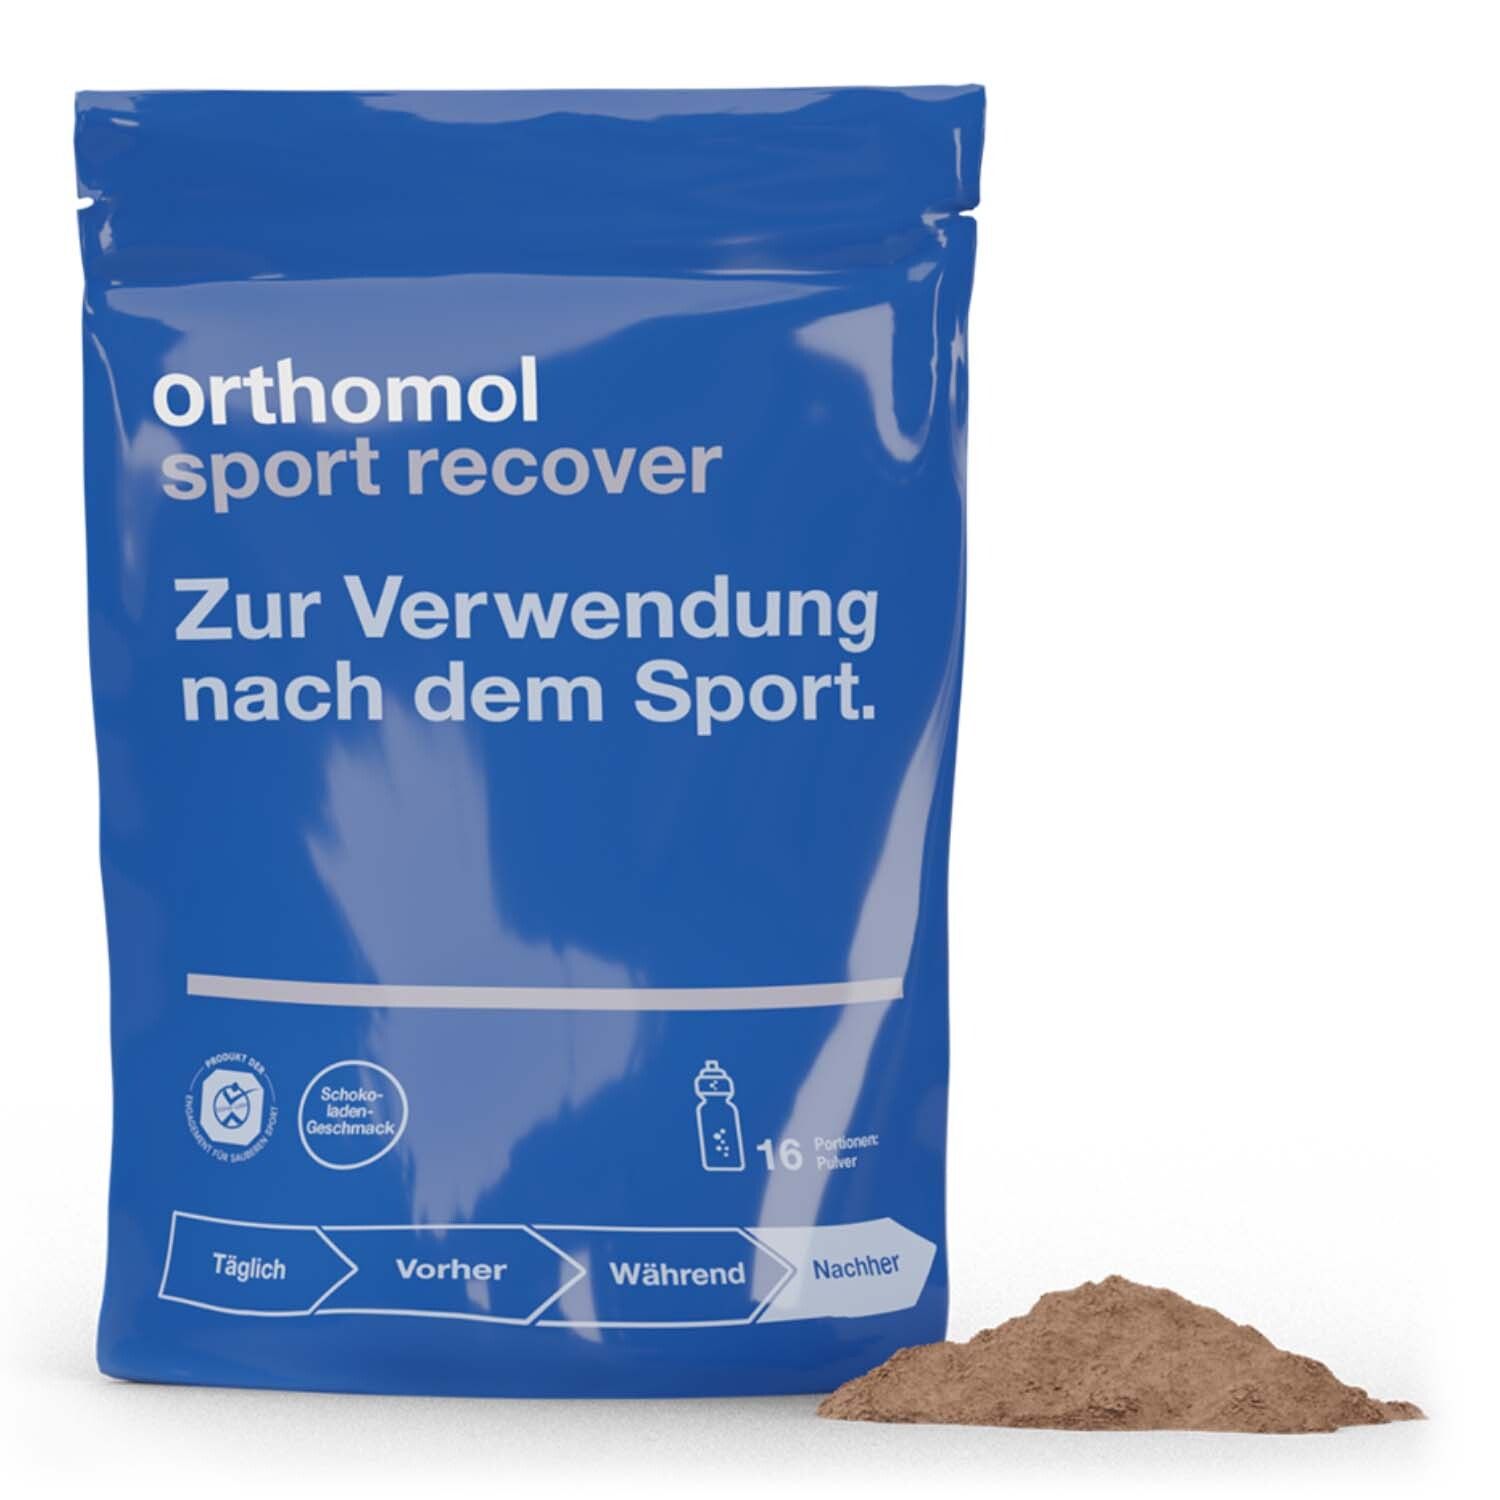 Orthomol Sport recover - Regeneration nach dem Ausdauersport - Eiweißpulver mit Bcaa und Zink - Schokoladen-Geschmack - 